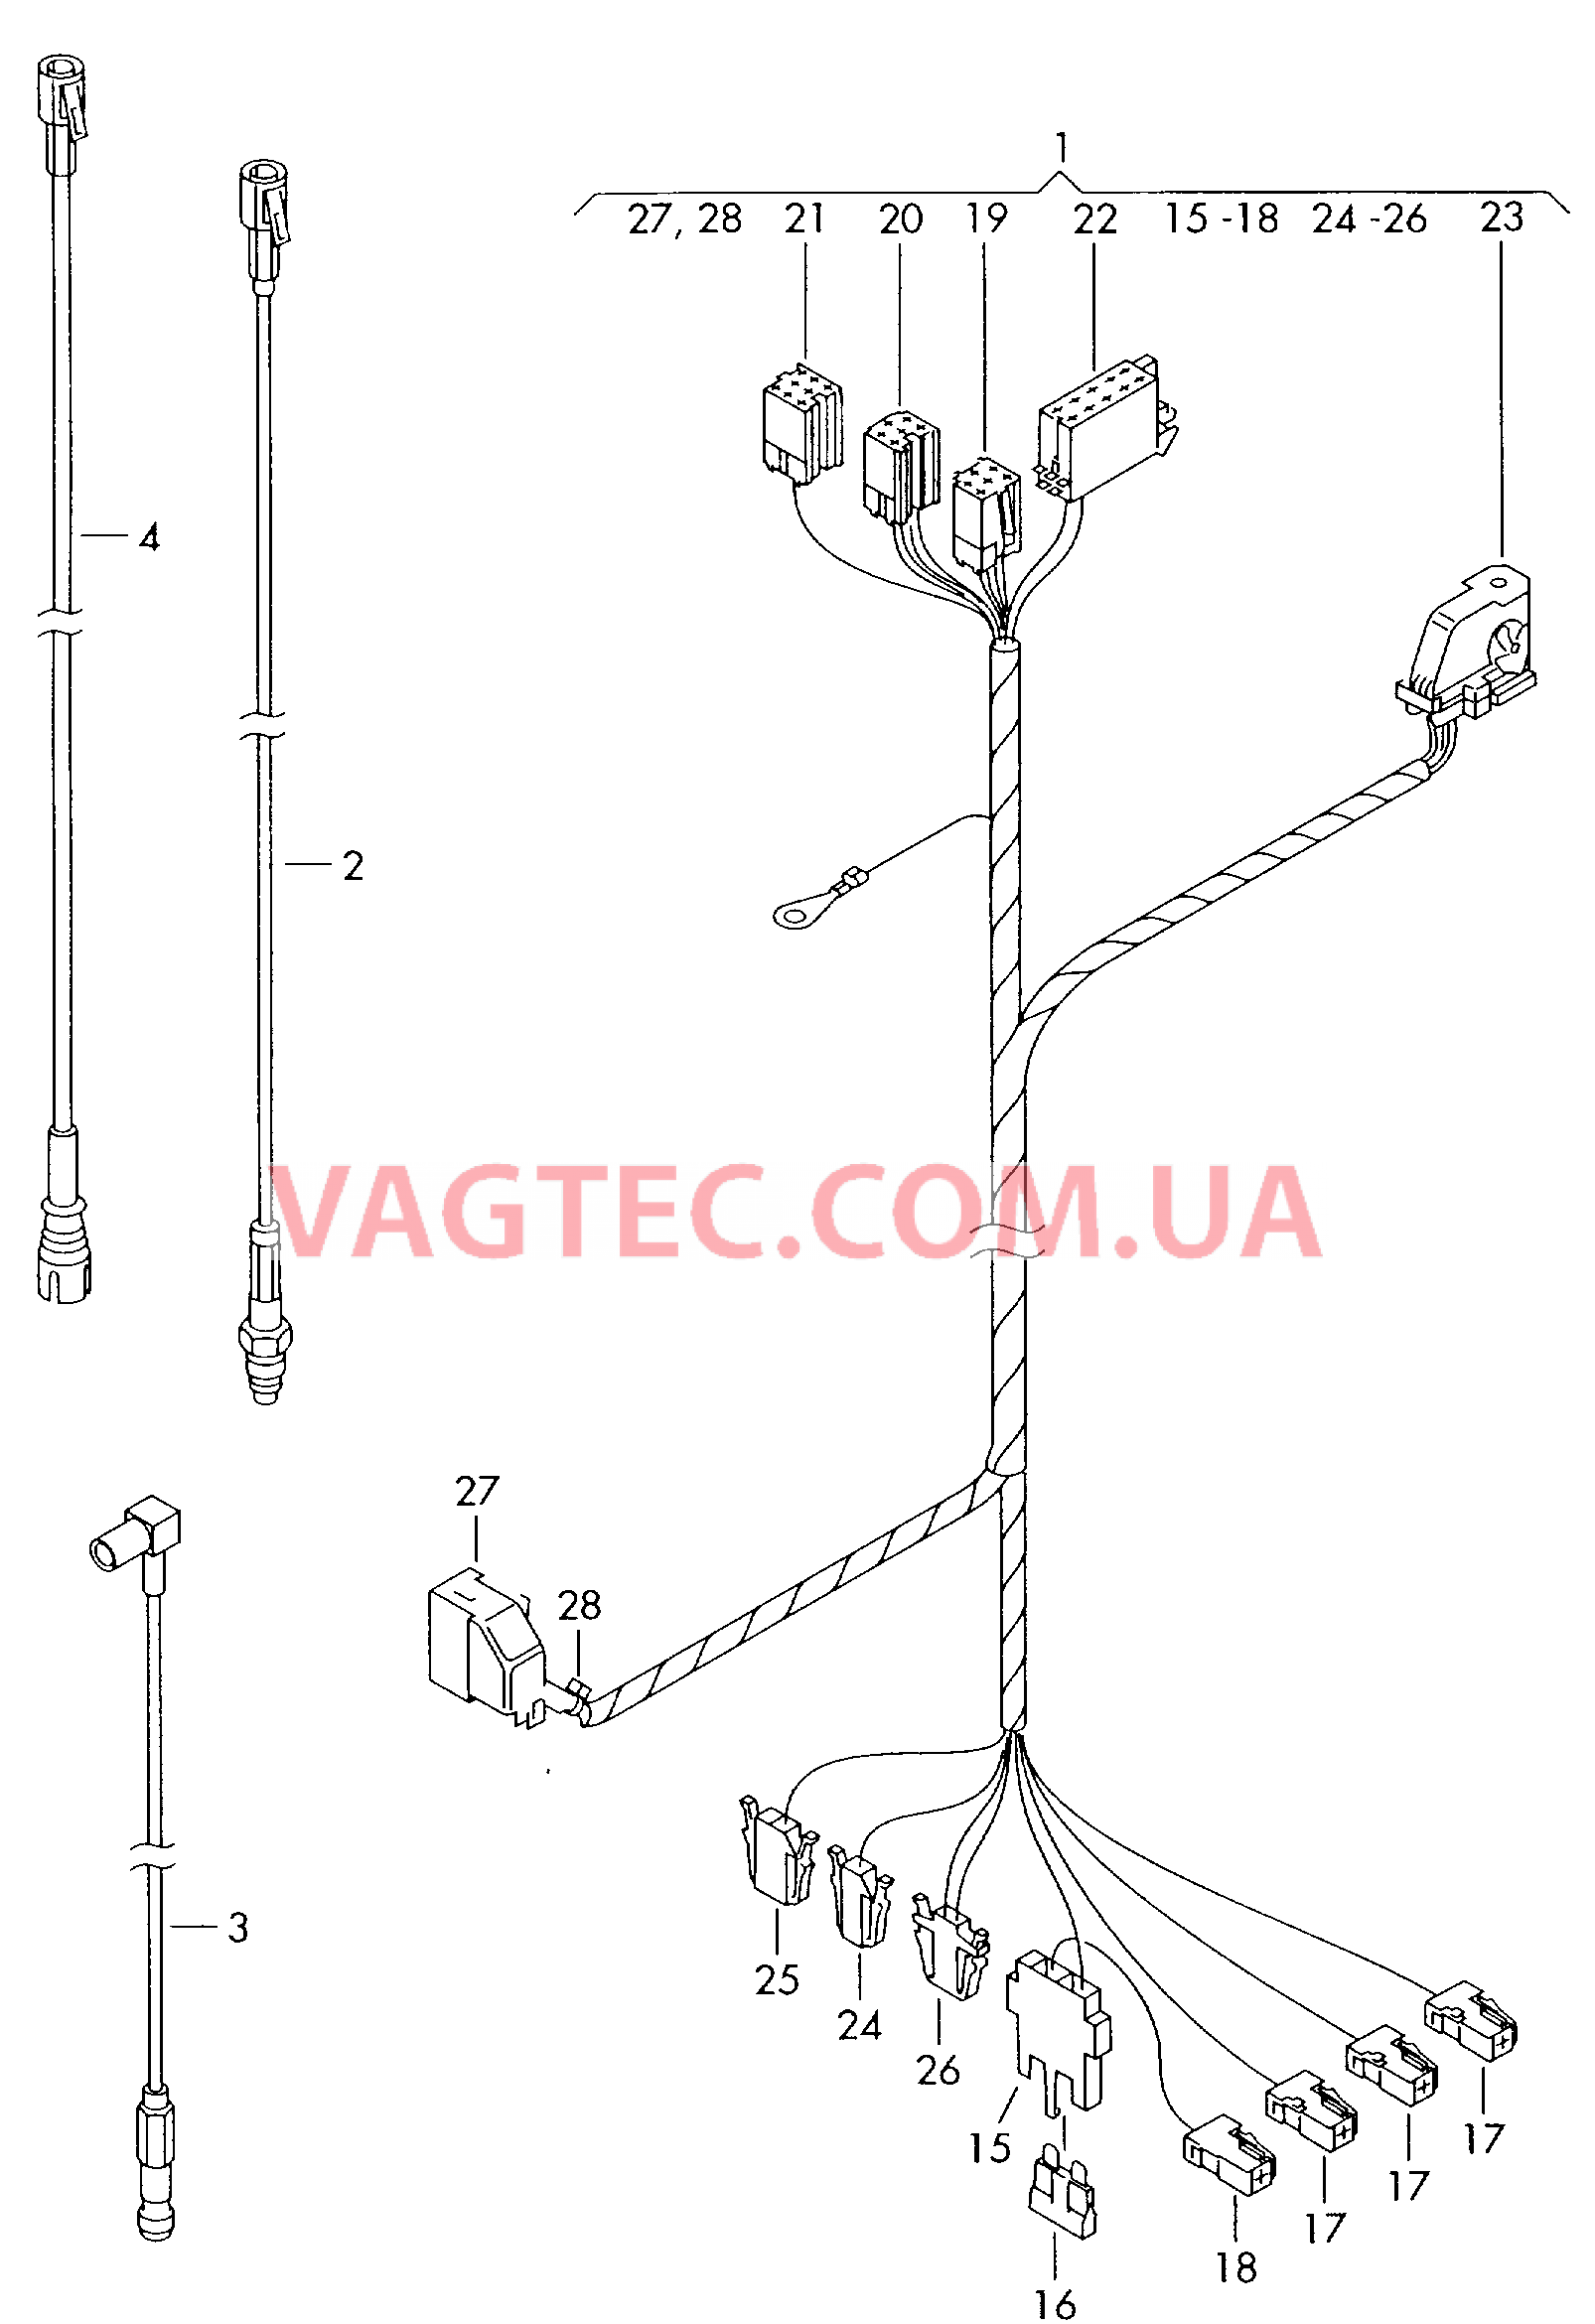 Жгут проводов системы навигации  Антенный кабель                   см. каталог:  для VOLKSWAGEN Transporter 2003